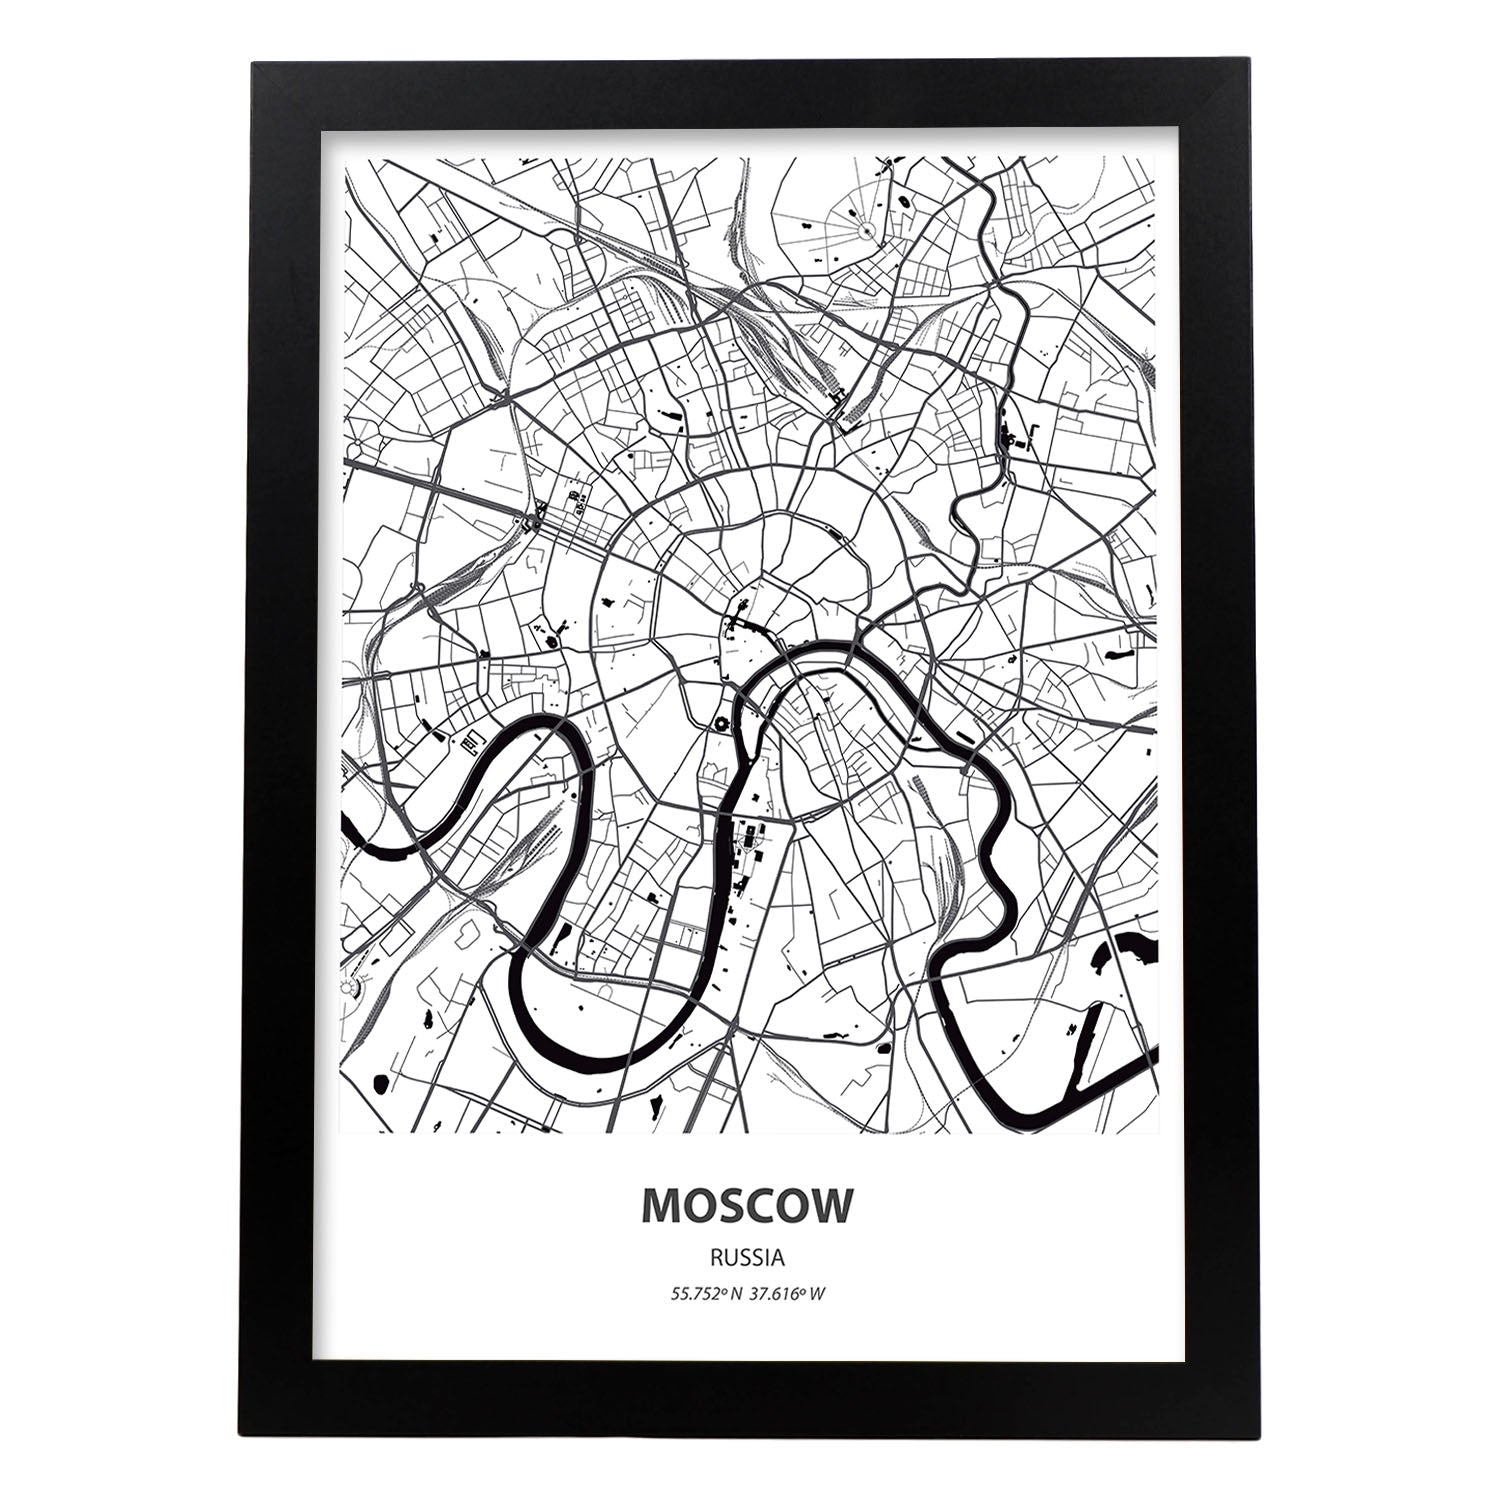 Poster con mapa de Moscow - Rusia. Láminas de ciudades de Asia con mares y ríos en color negro.-Artwork-Nacnic-A4-Marco Negro-Nacnic Estudio SL